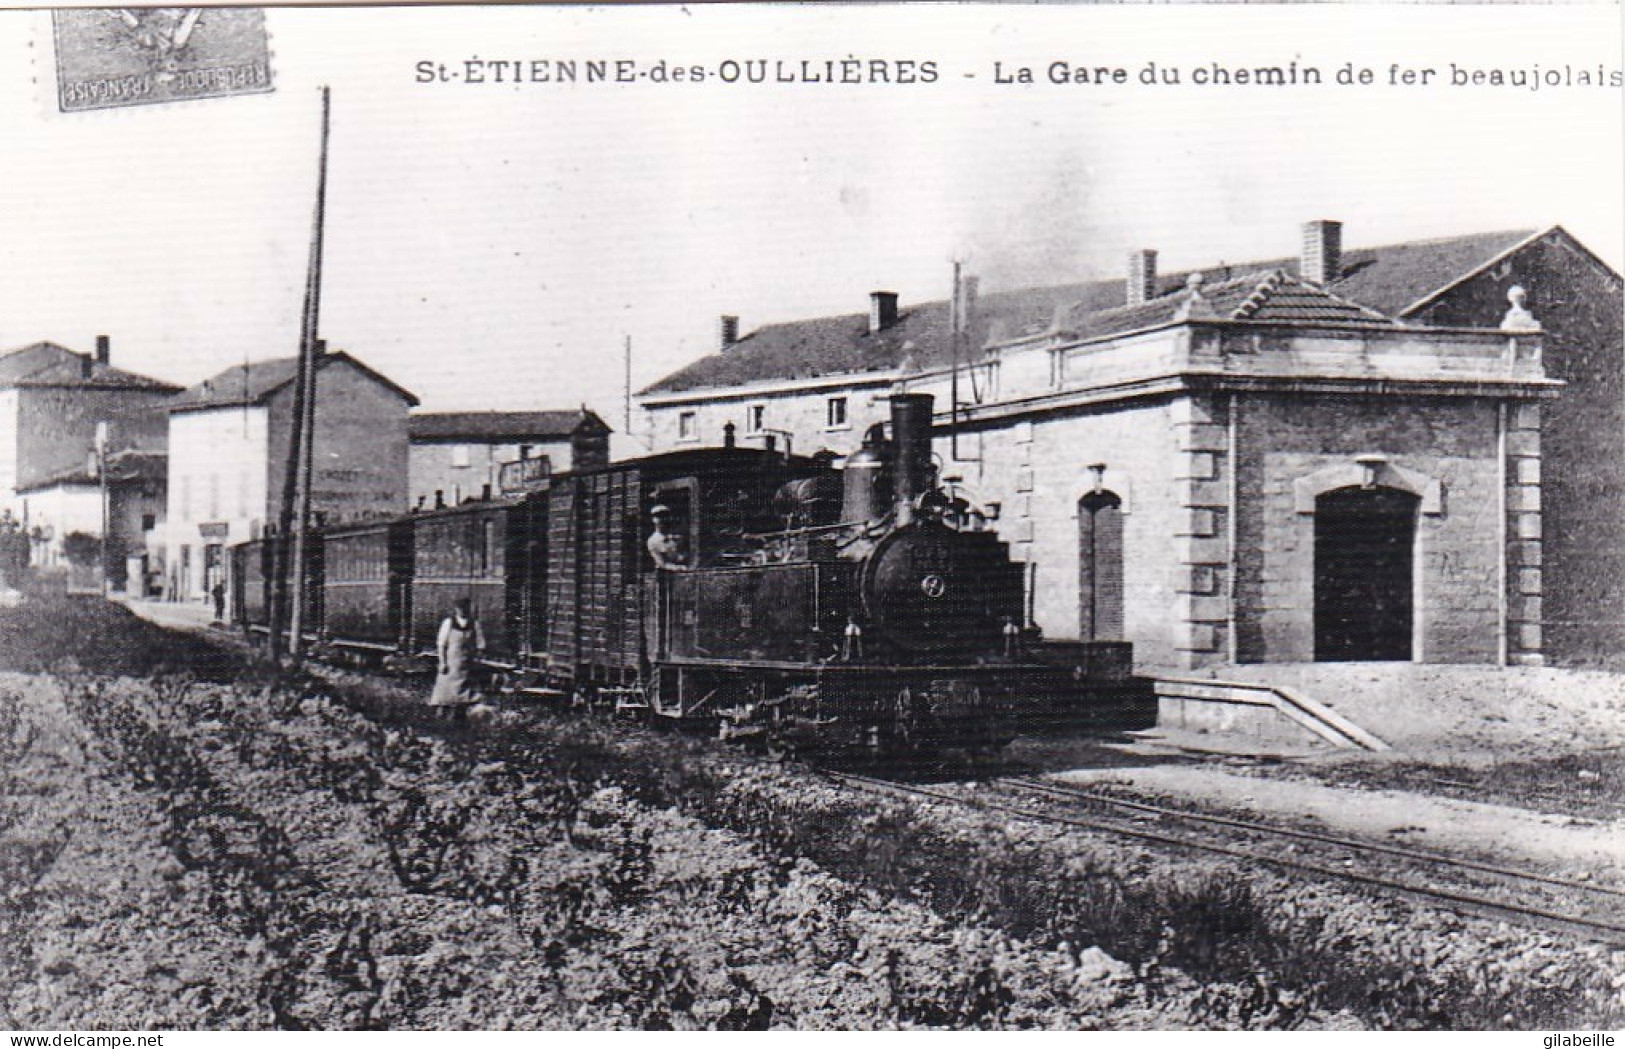 Photo - 69 - Rhone - SAINT ETIENNE Des OULLIERES - La Gare Du C.F.B  - Ligne De Monsols-  Retirage - Zonder Classificatie